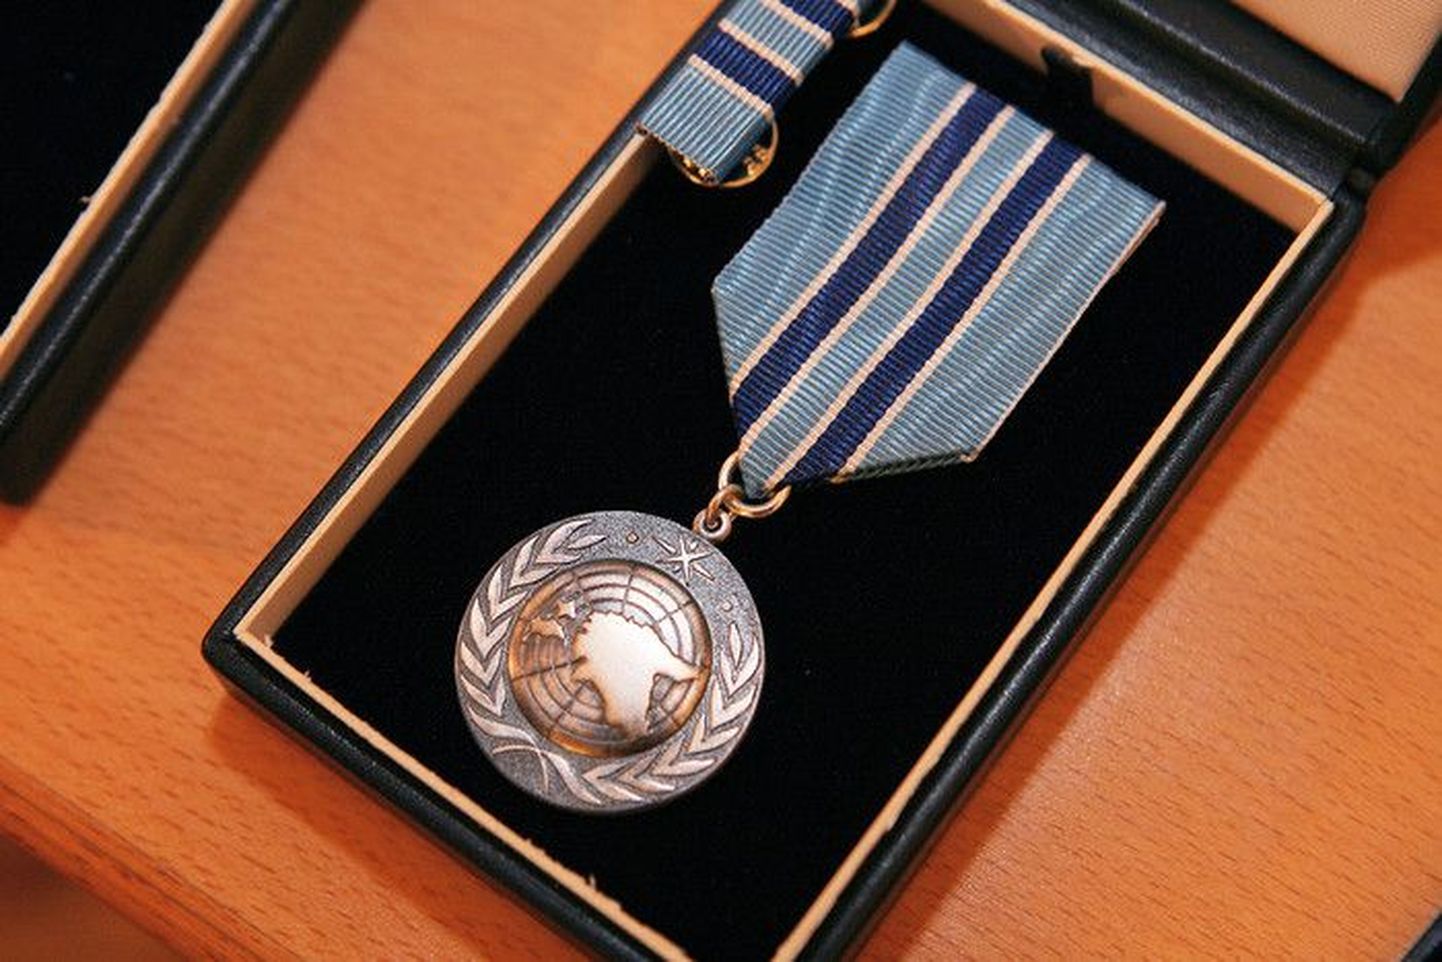 Rahvusvahelises sõjalises operatsioonis osalenu medal